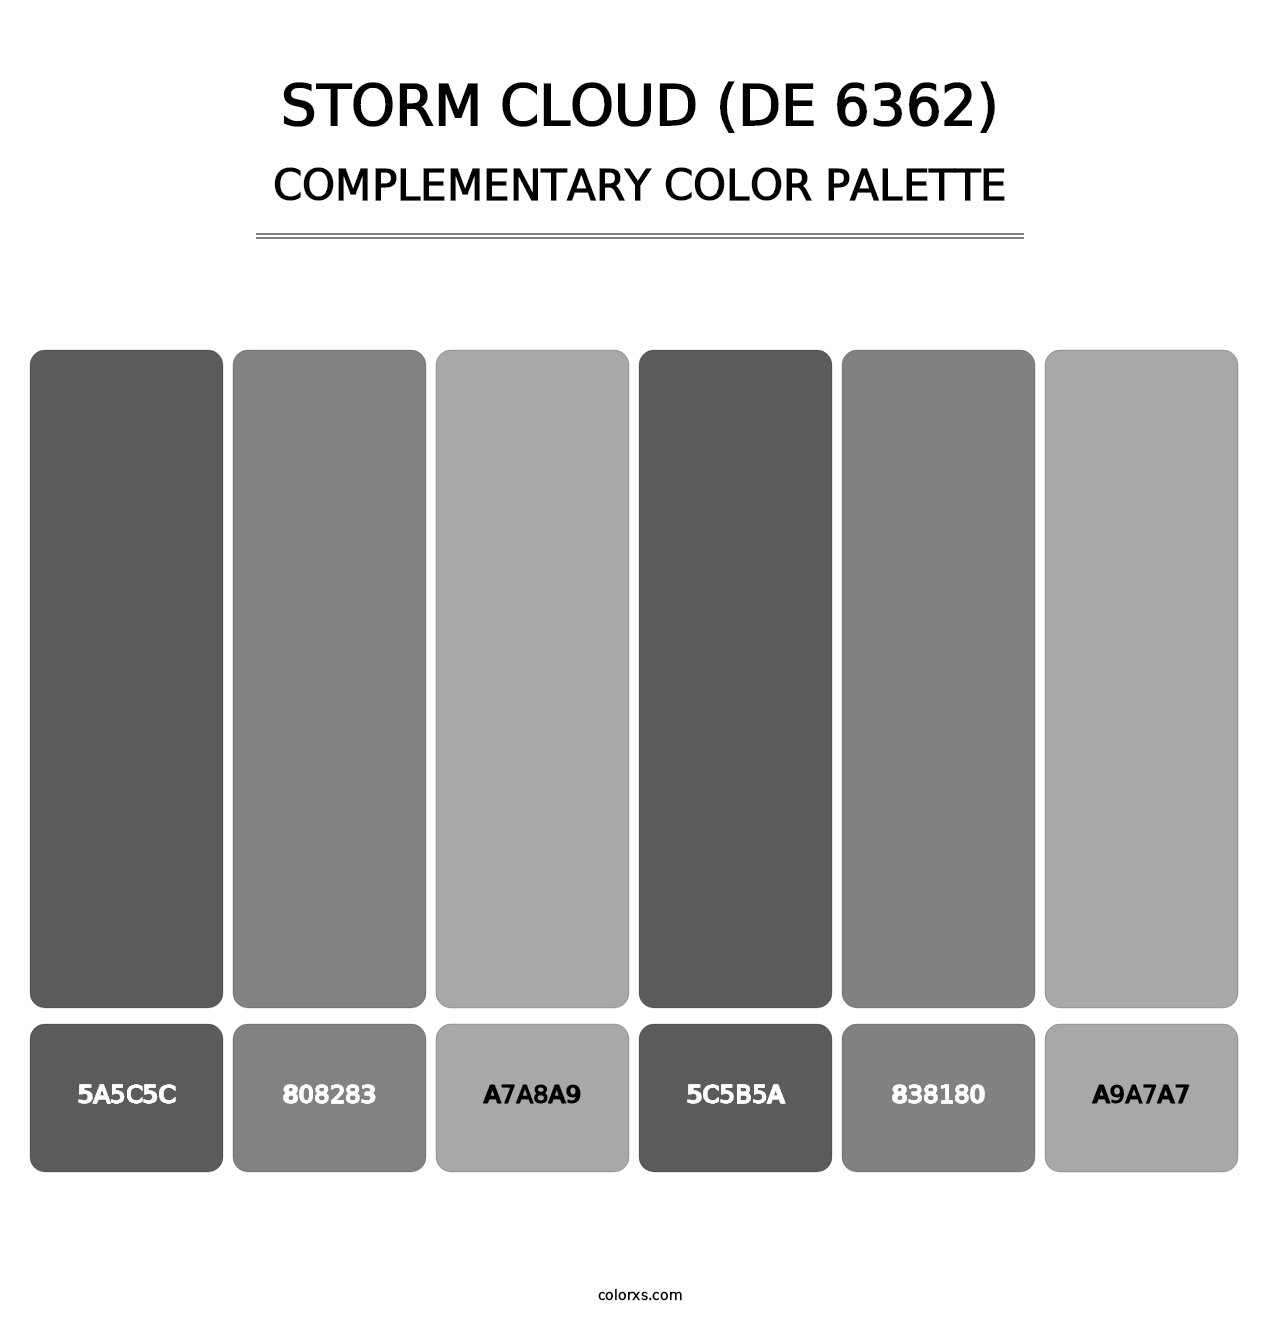 Storm Cloud (DE 6362) - Complementary Color Palette